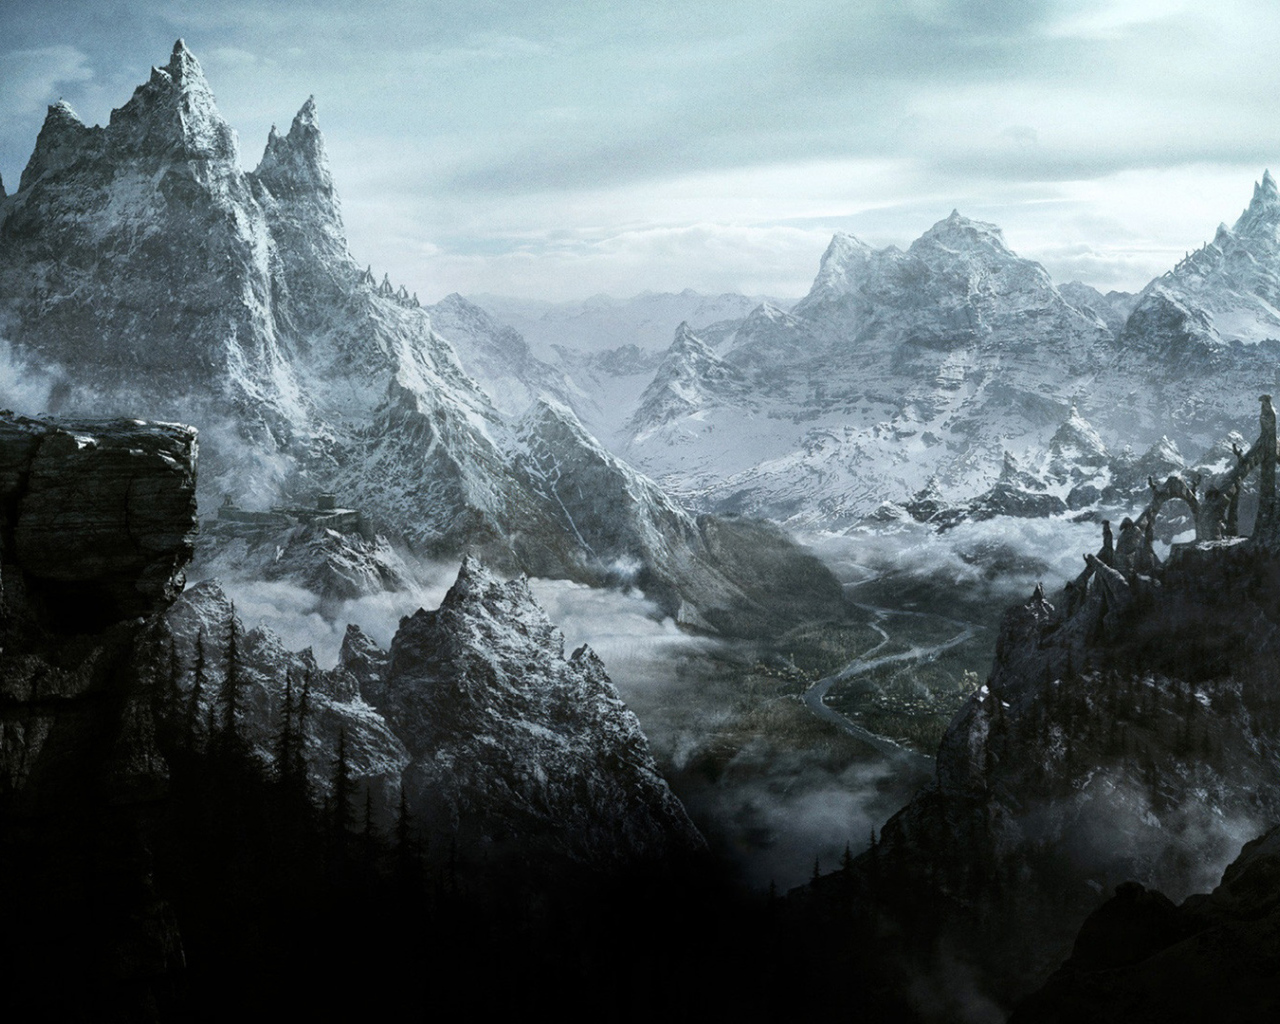 Elder Scrolls Online: the mountains